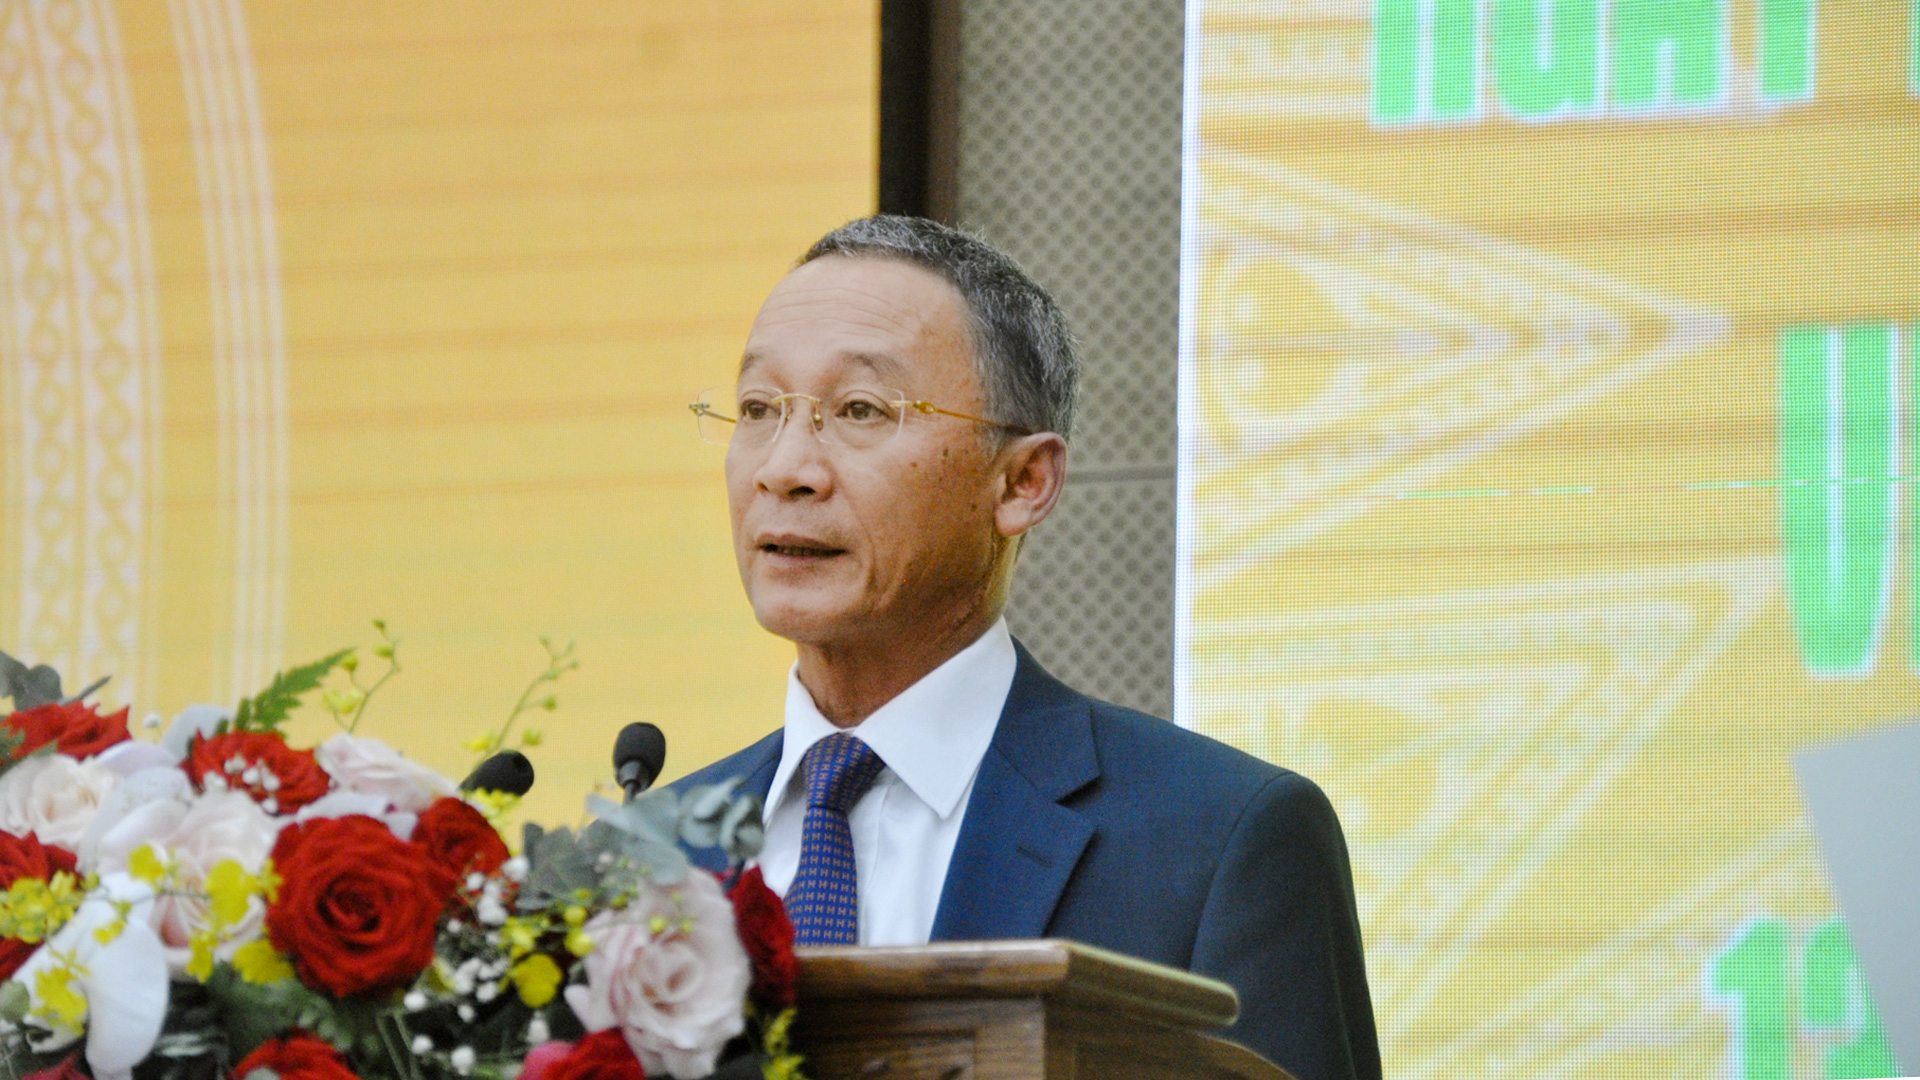 Đồng chí Trần Văn Hiệp - Chủ tịch UBND tỉnh Lâm Đồng phát biểu tại buổi gặp mặt